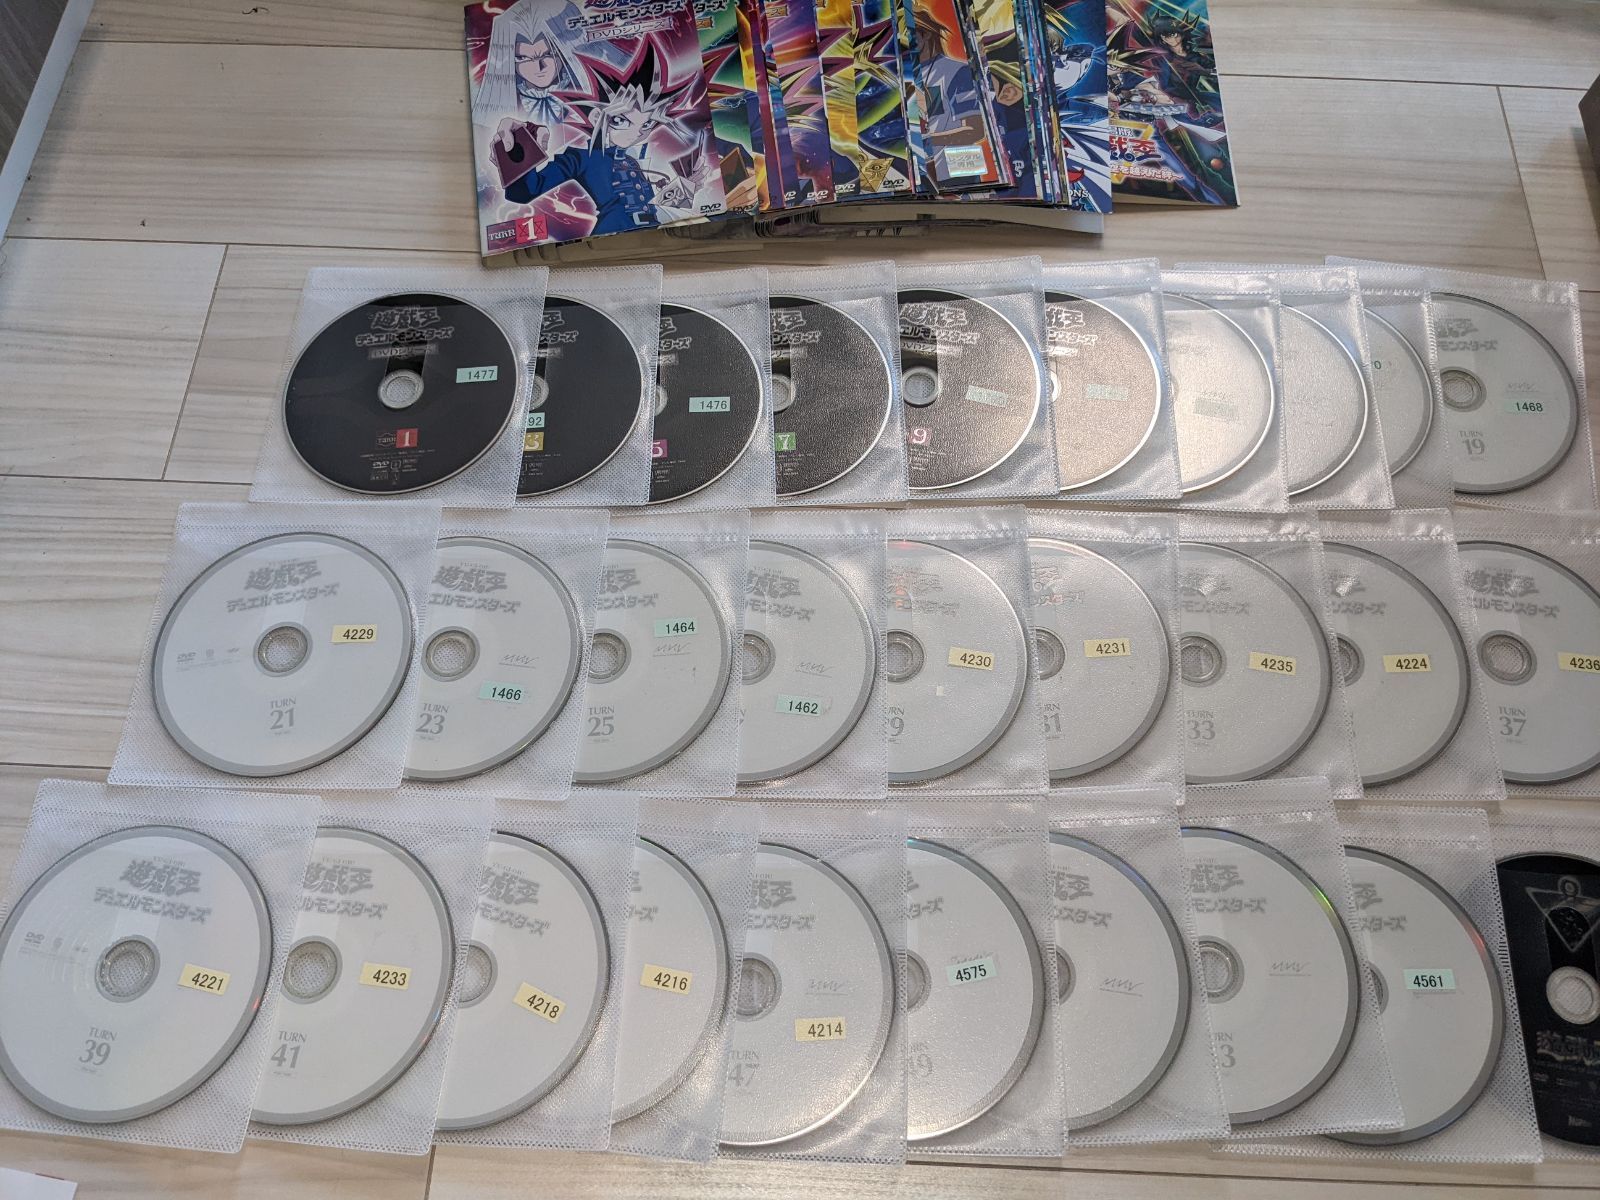 遊戯王デュエルモンスターズ DVDシリーズ 56巻 全巻セット+劇場版2巻